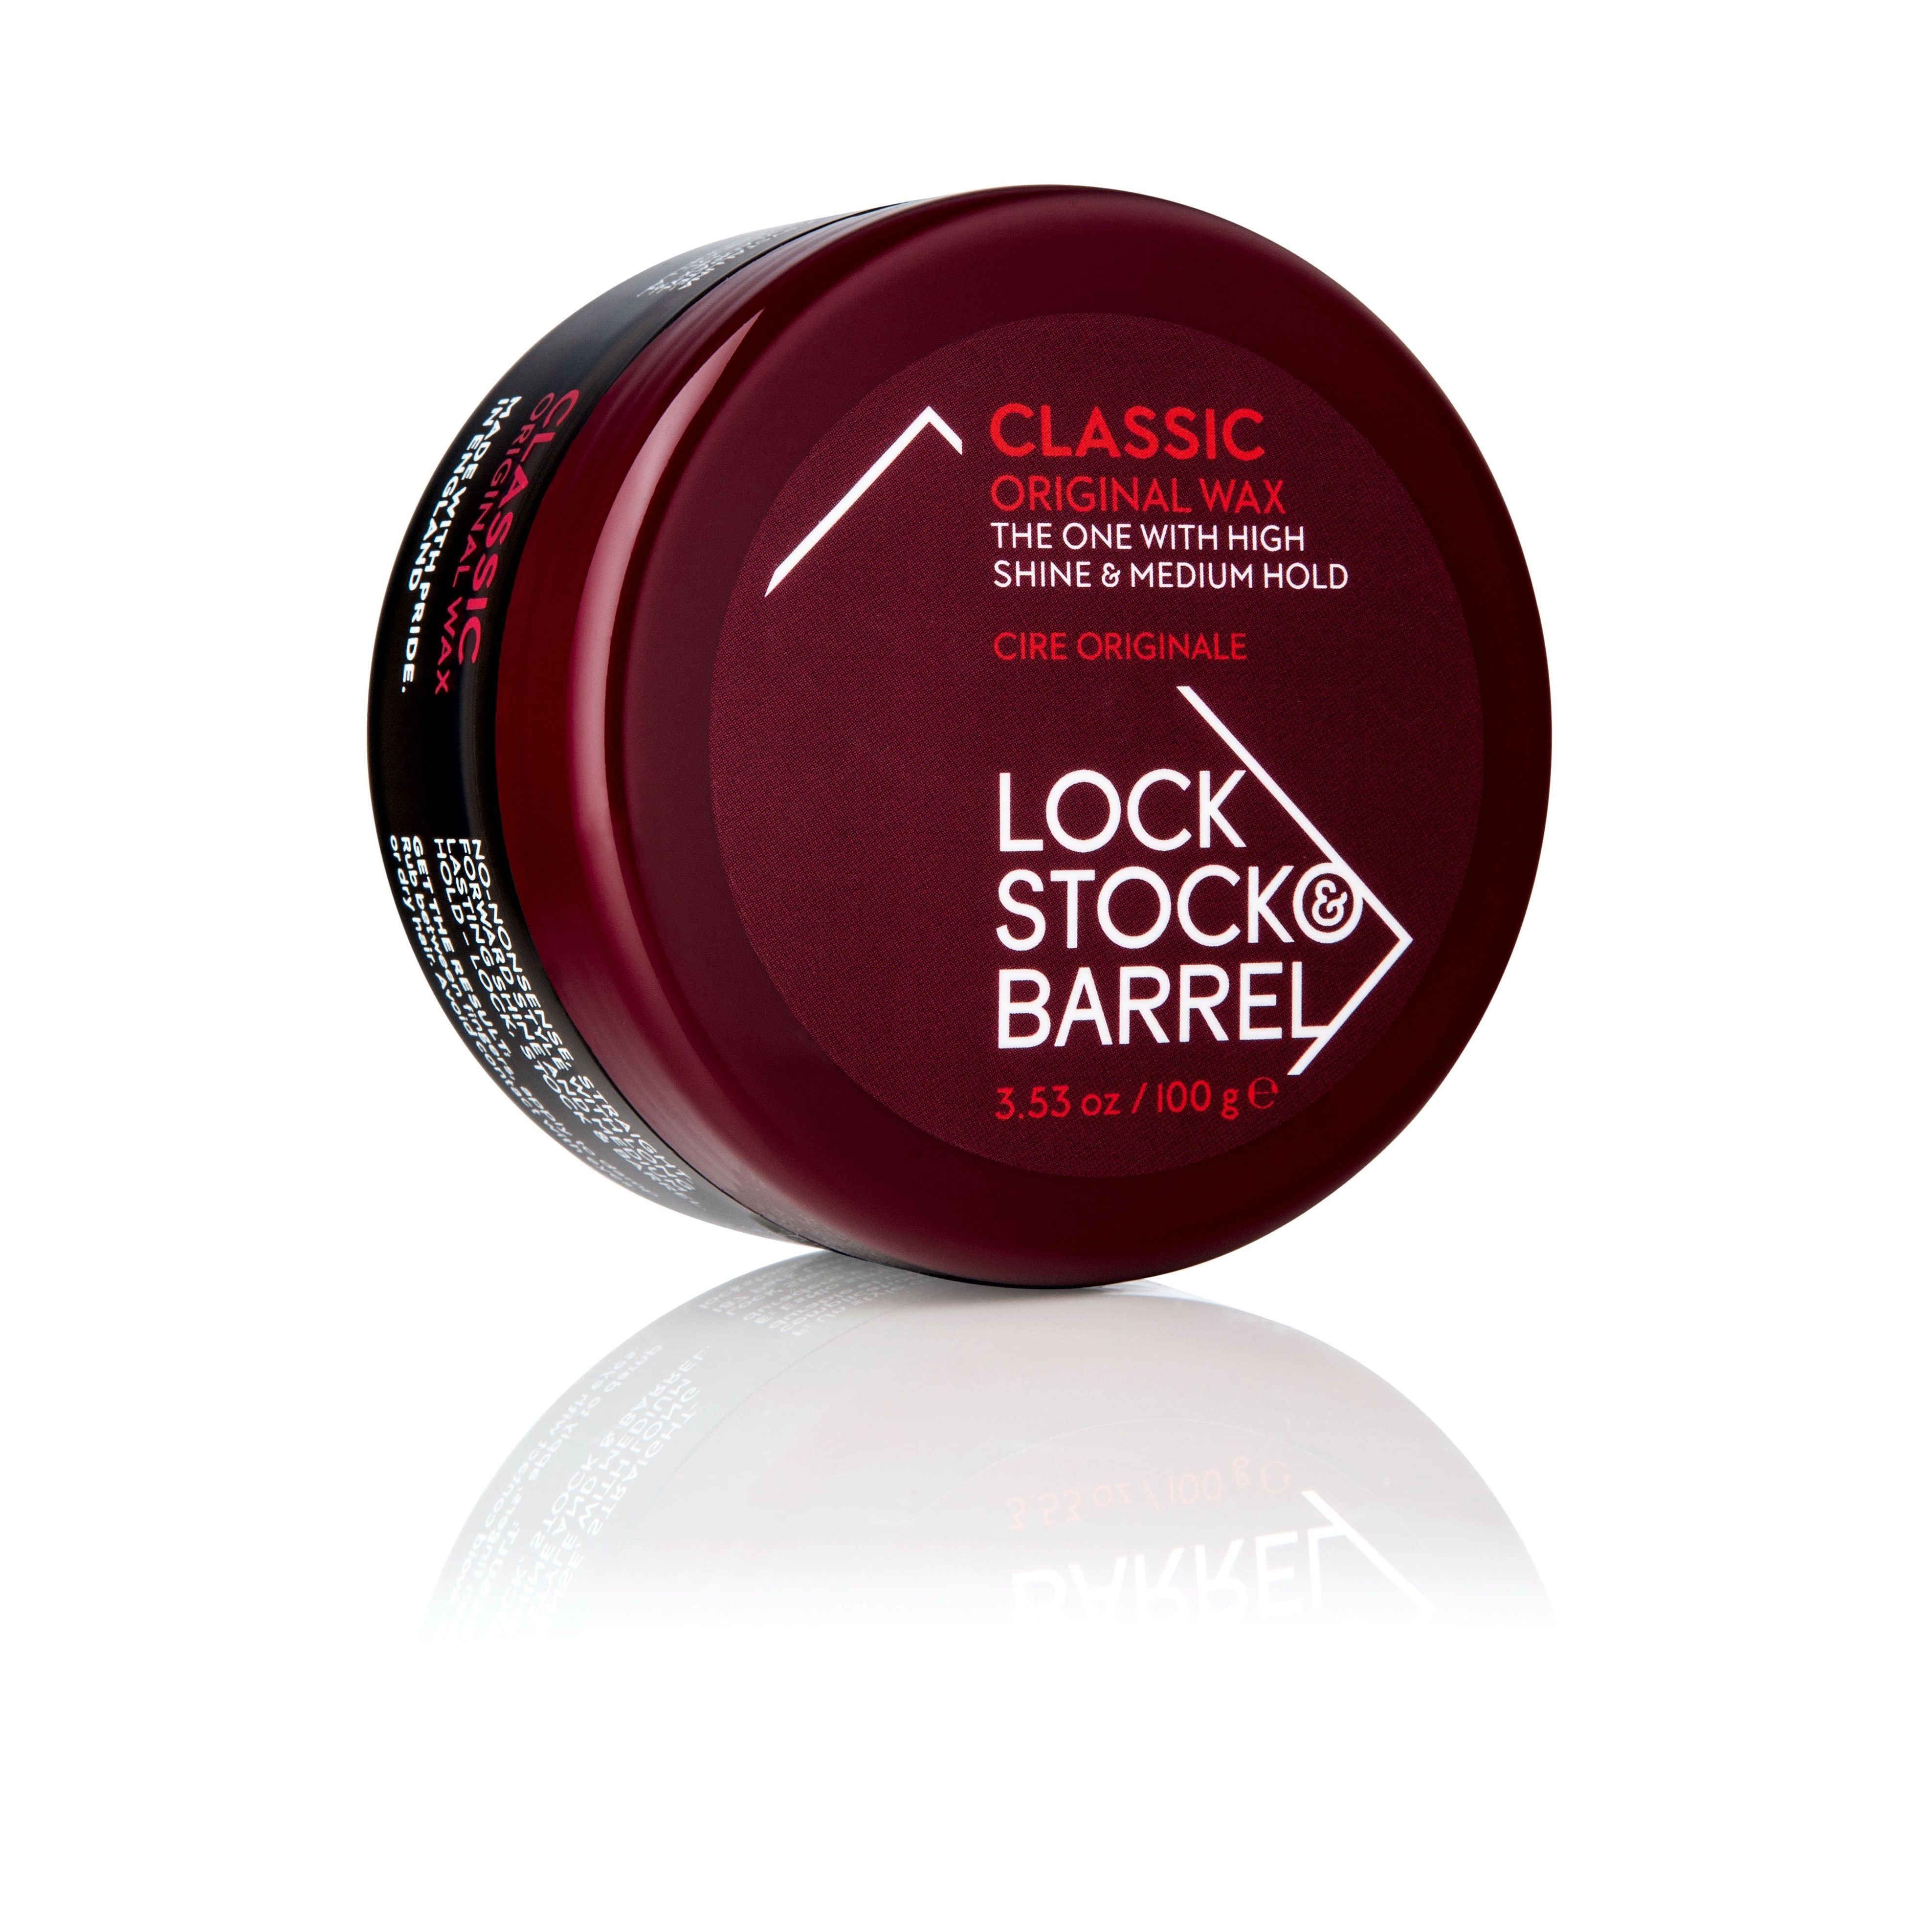 Воск для укладки волос Lock Stock & Barrel Original Classic Wax мужской 100 мл lock stock barrel прептоник с эффектом утолщения волос для укладки 100 мл